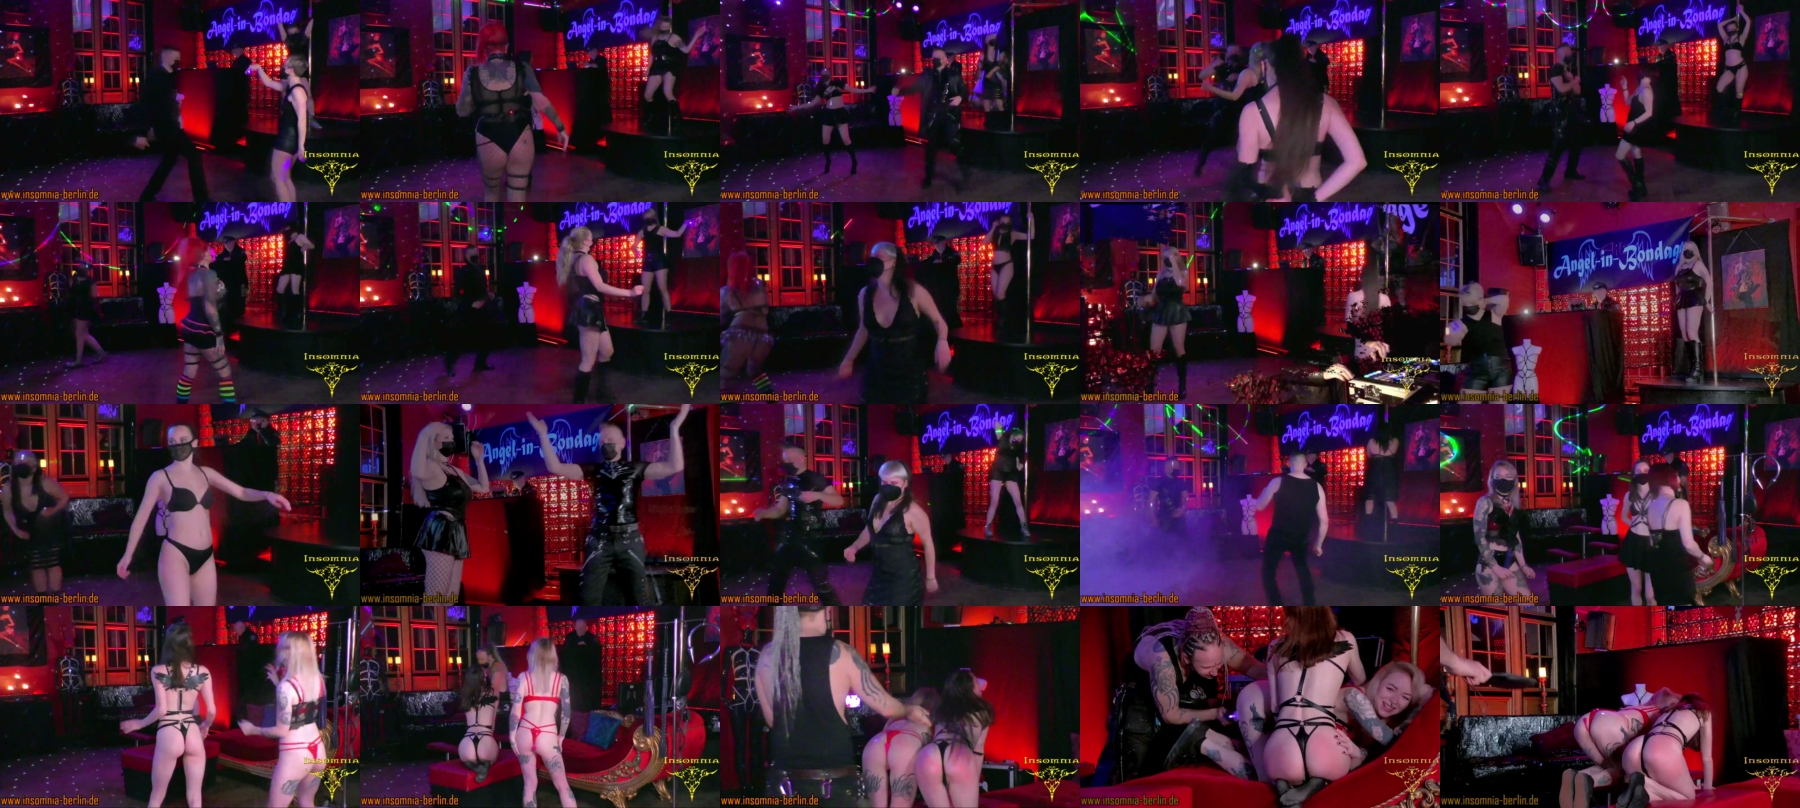 Insomnia_Kinky_Nightclub_Tv2  26-03-2021